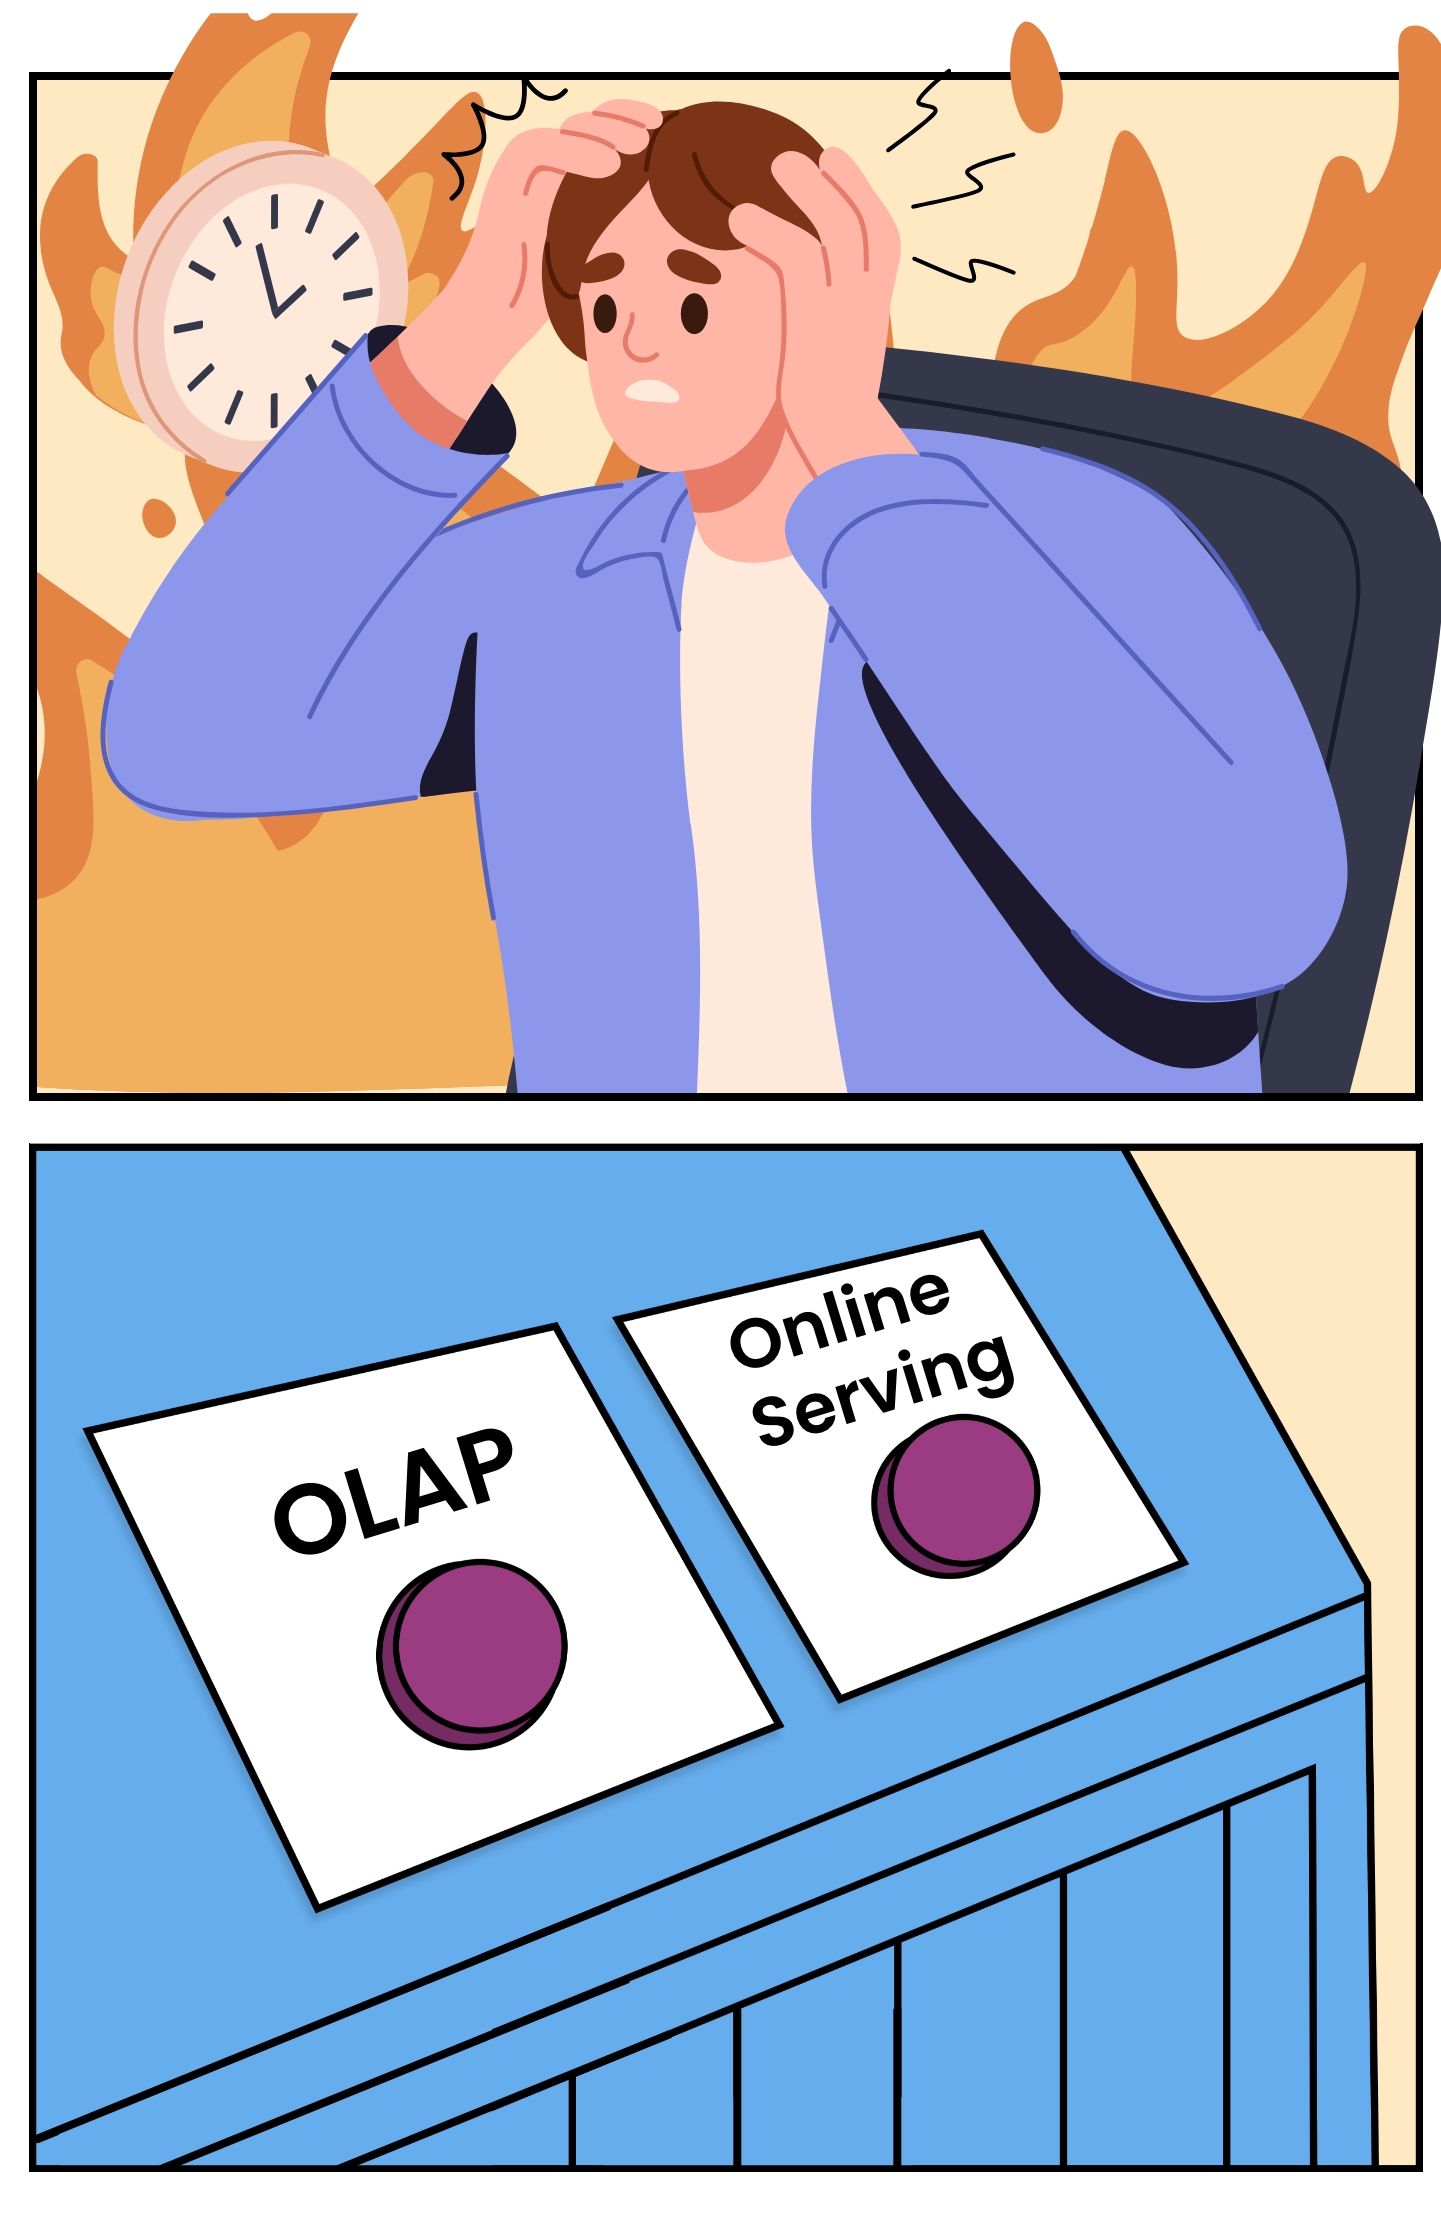 OLAP vs Online Serving